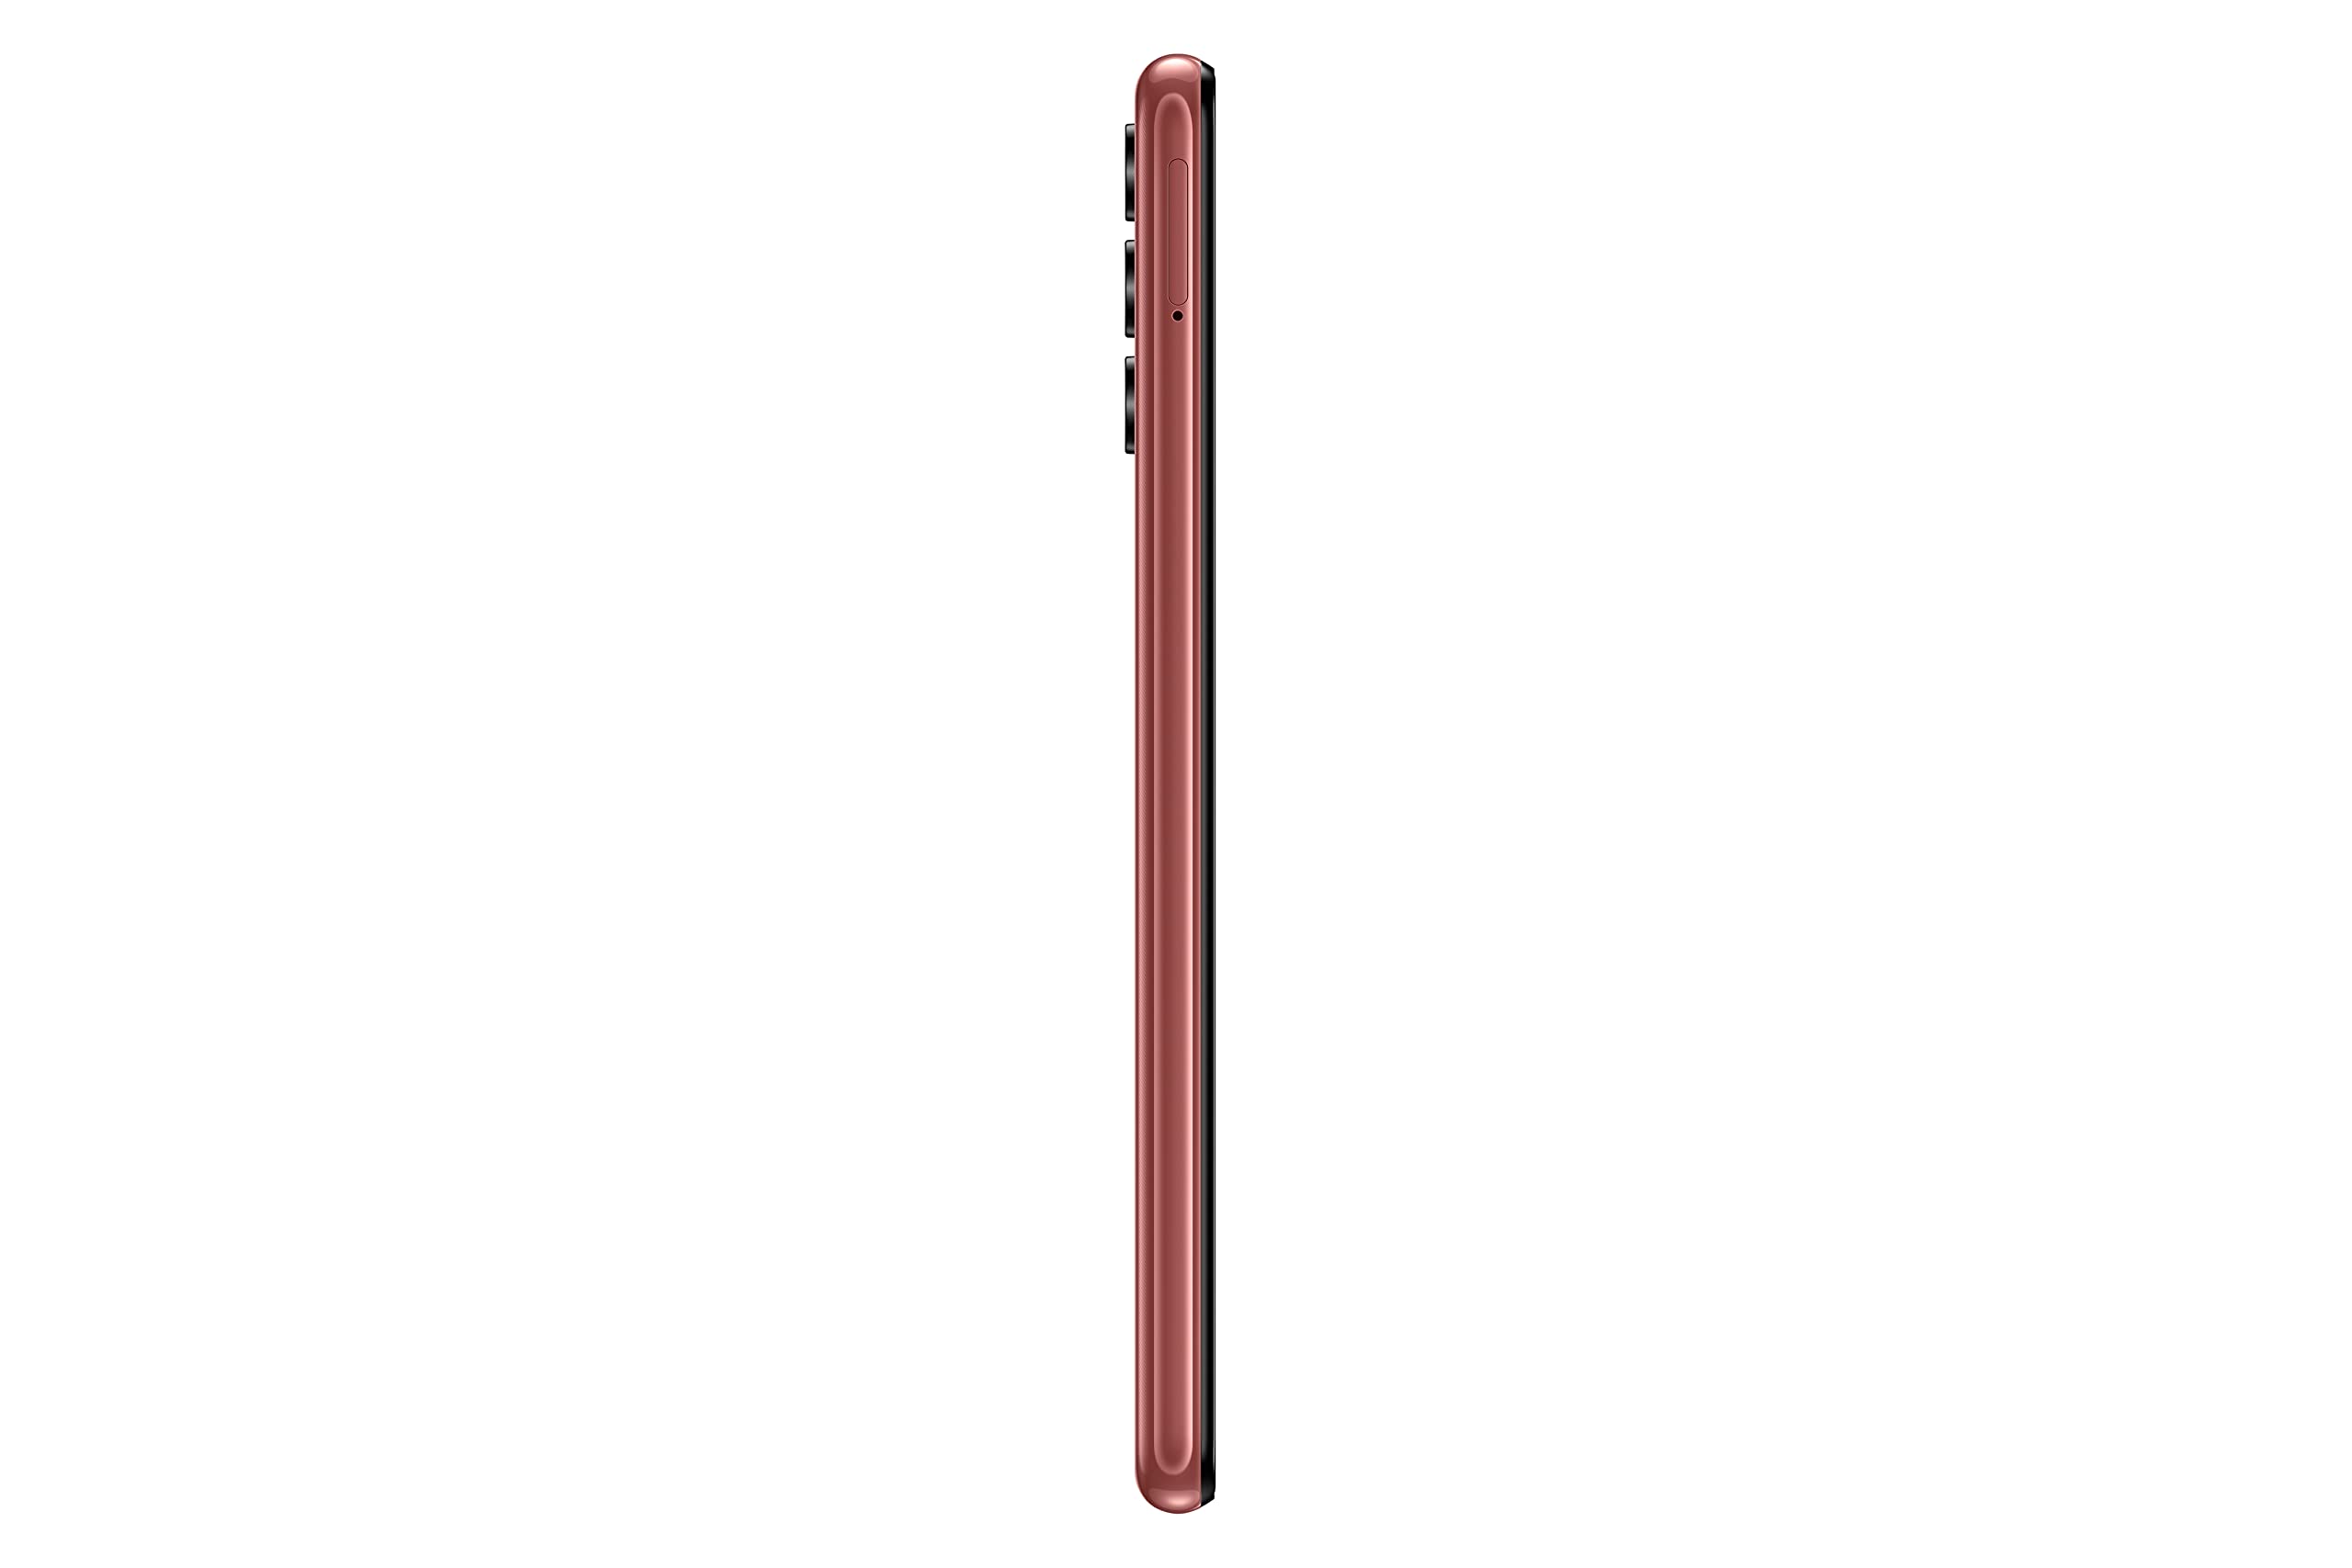 Samsung Galaxy A04s (Copper, 4GB RAM, 64GB Storage)